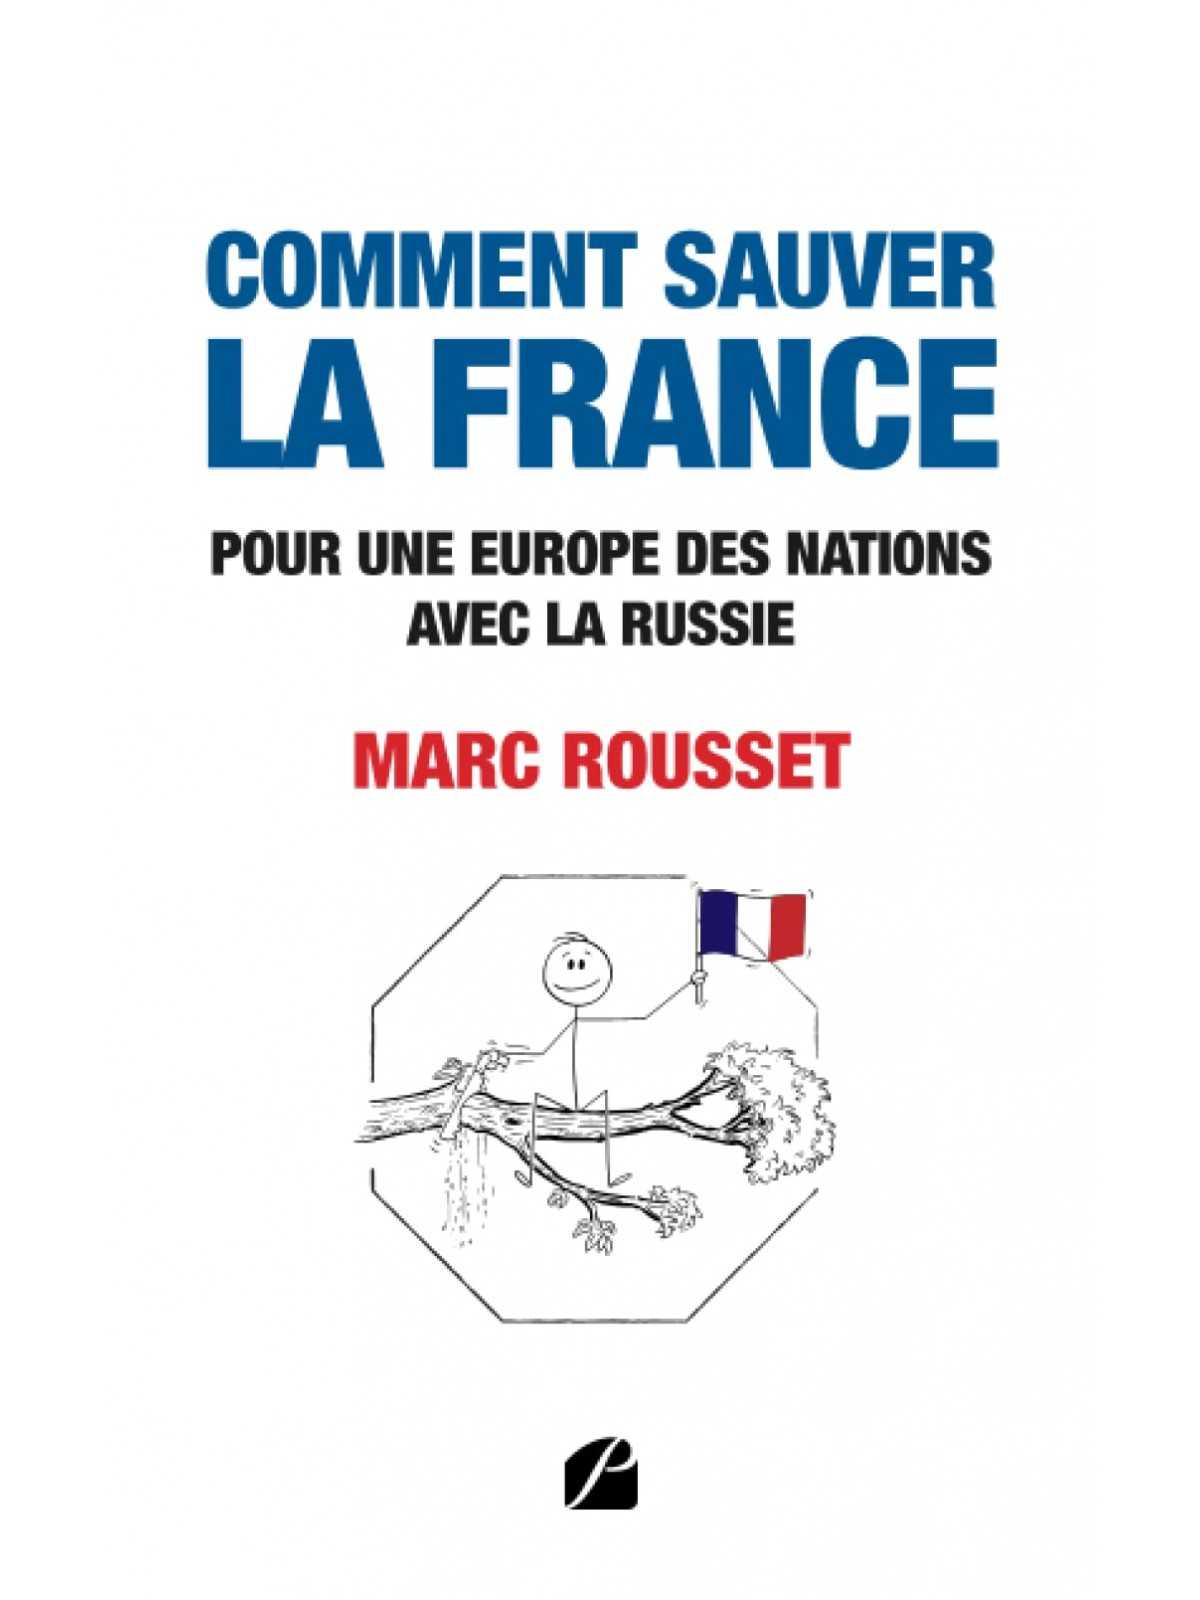 Marc Rousset : Comment sauver la France - Pour une Europe des nations avec la Russie.